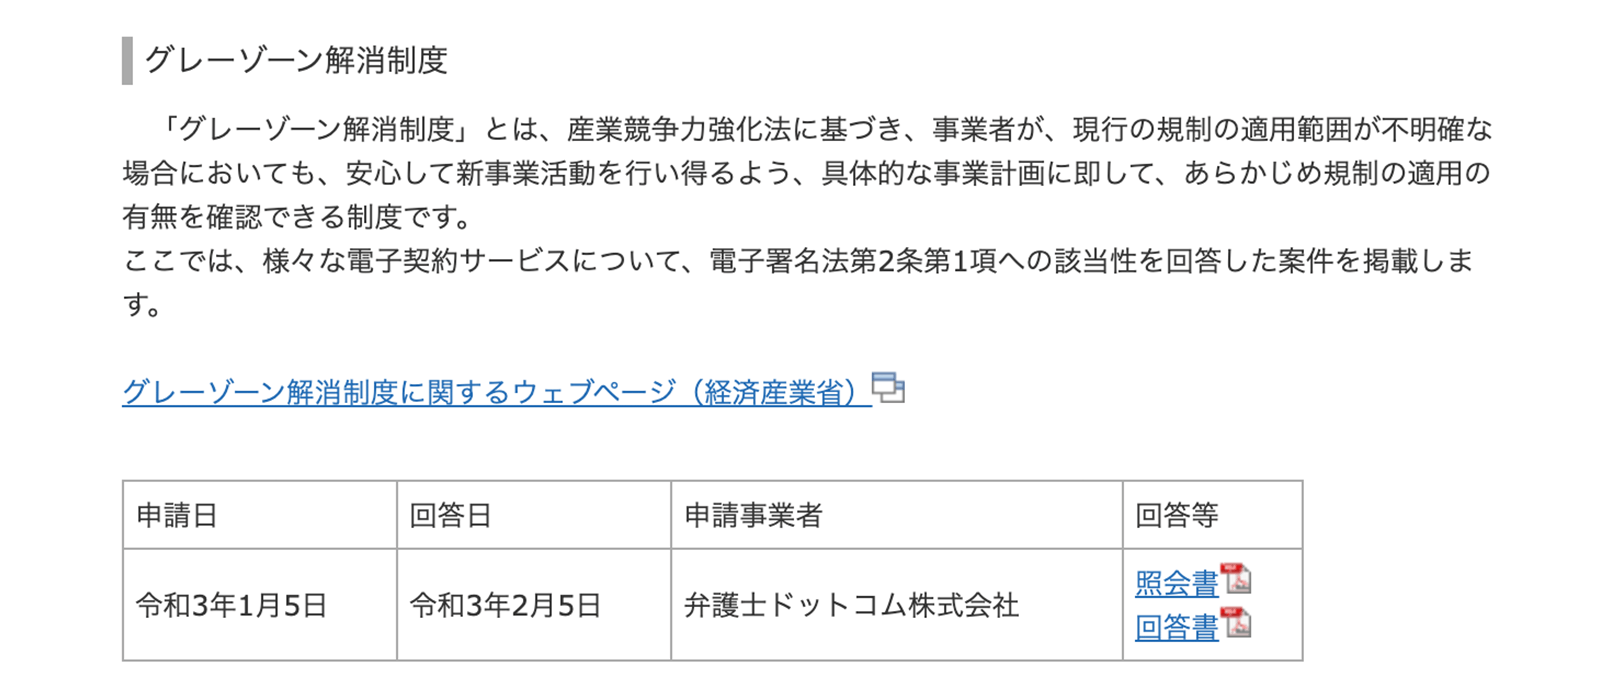 総務省・法務省のウェブサイトにおいても、電子署名法2条1項への該当性が確認された電子契約サービスの第1号案件として掲示 https://www.soumu.go.jp/main_sosiki/joho_tsusin/top/ninshou-law/law-index.html